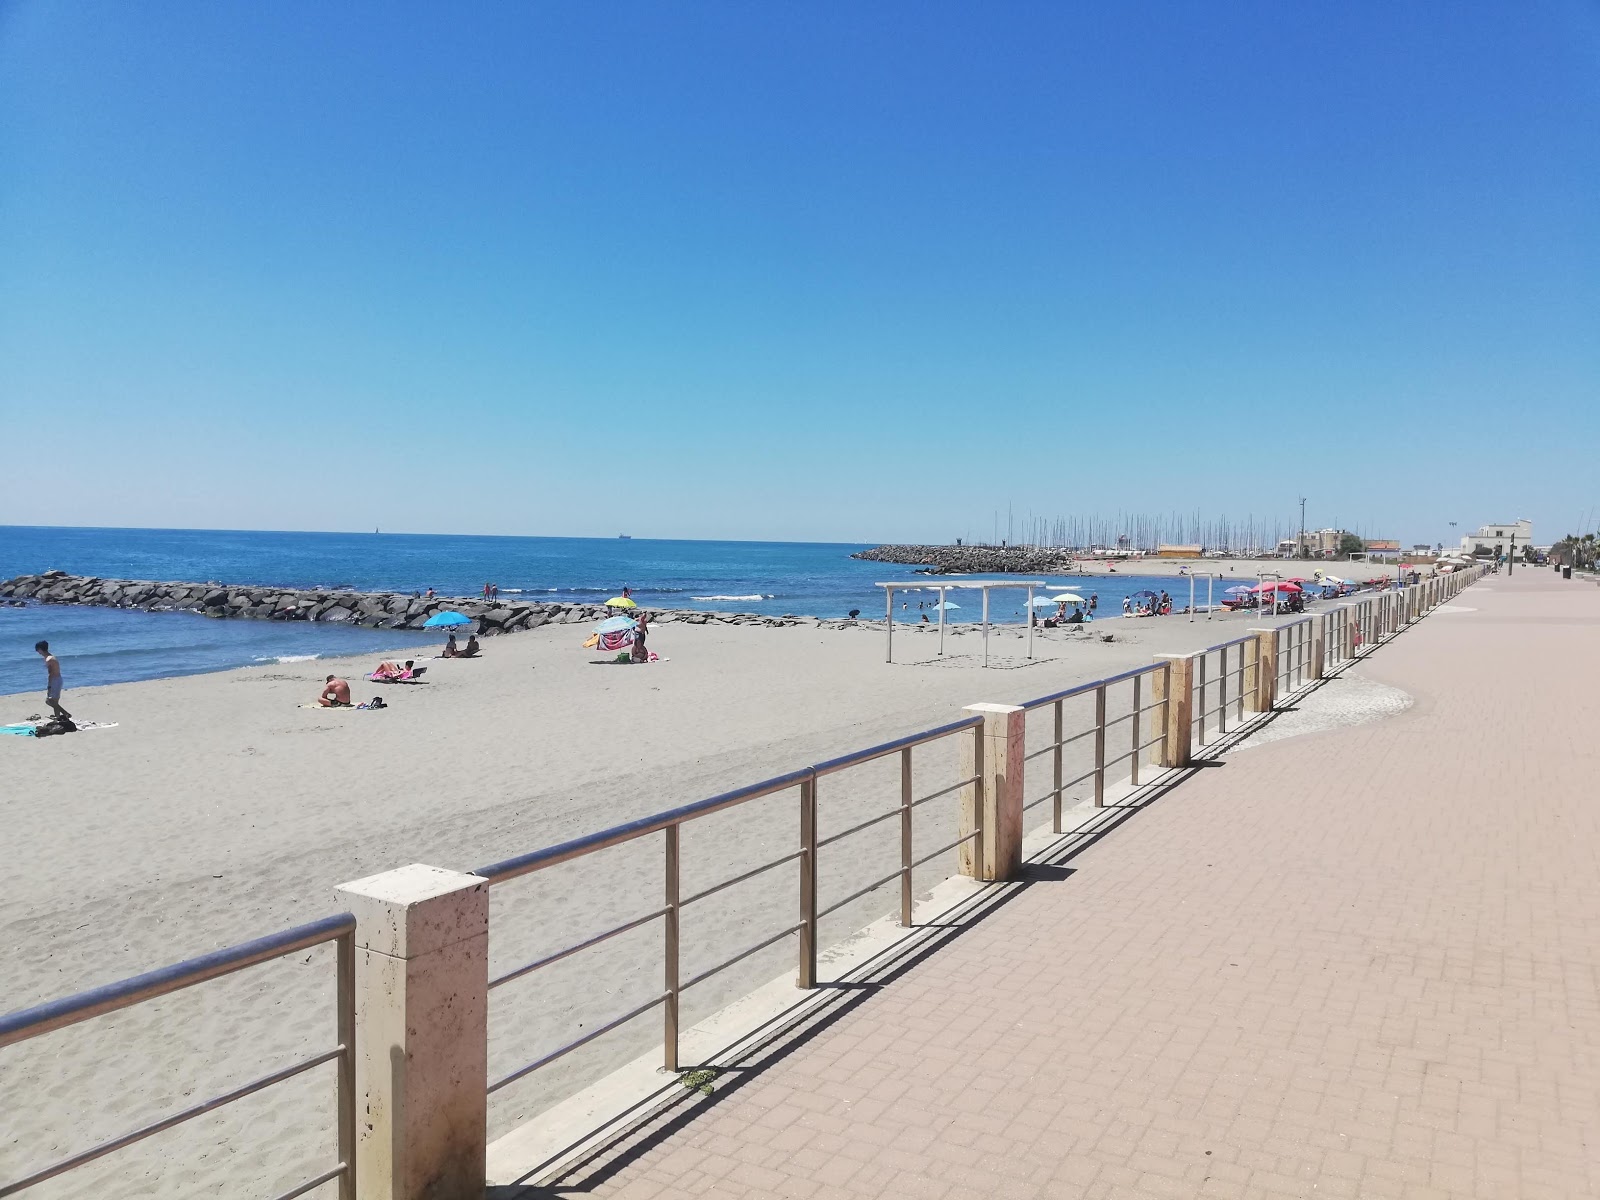 Fotografie cu Ostia beach zonă de stațiune de pe plajă